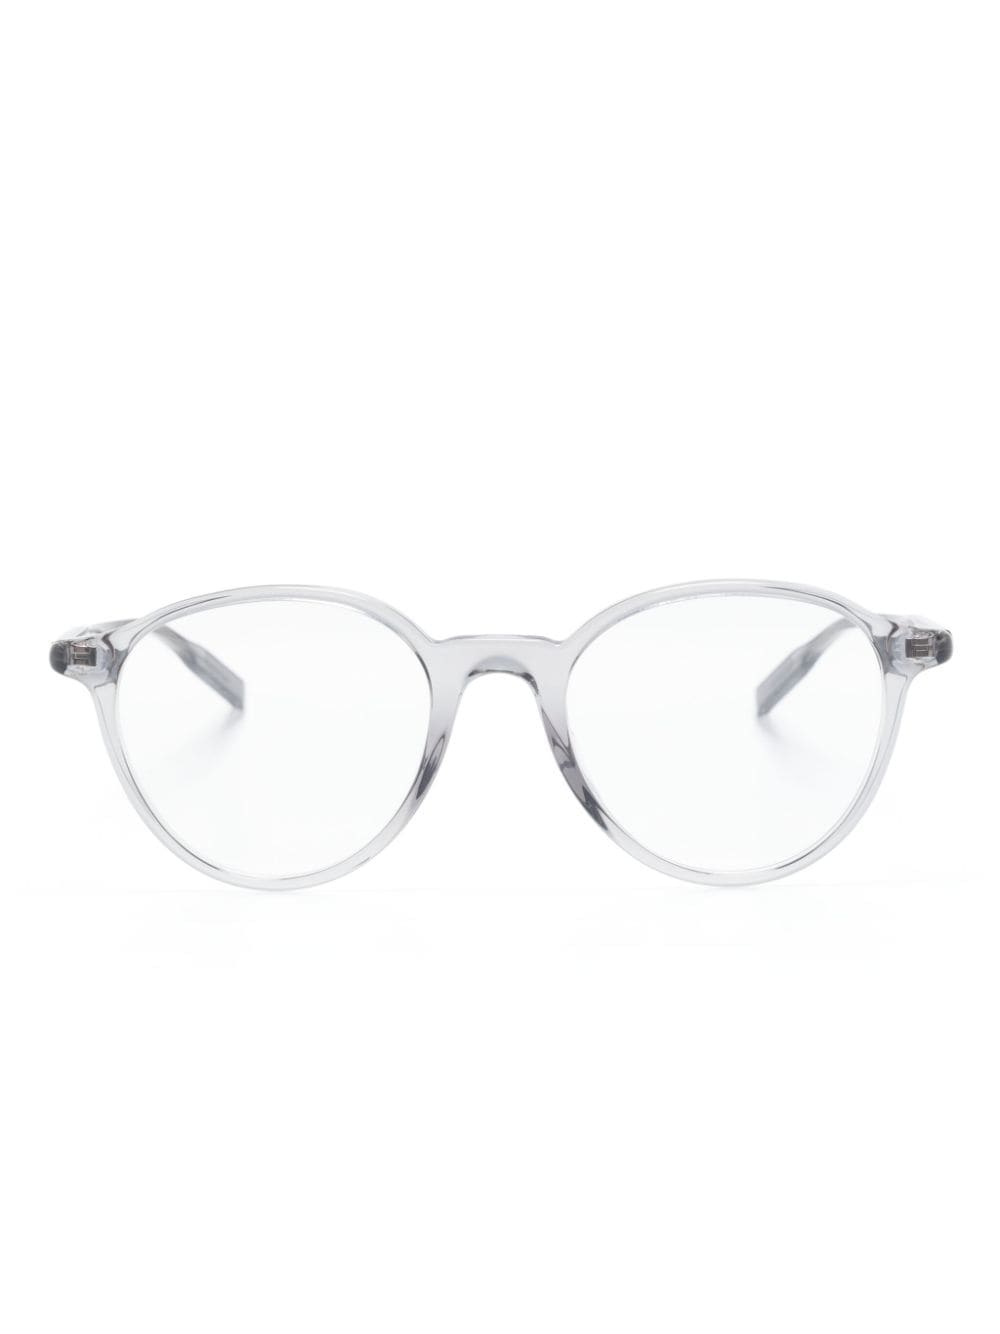 montblanc lunettes de vue rondes à logo gravé - gris